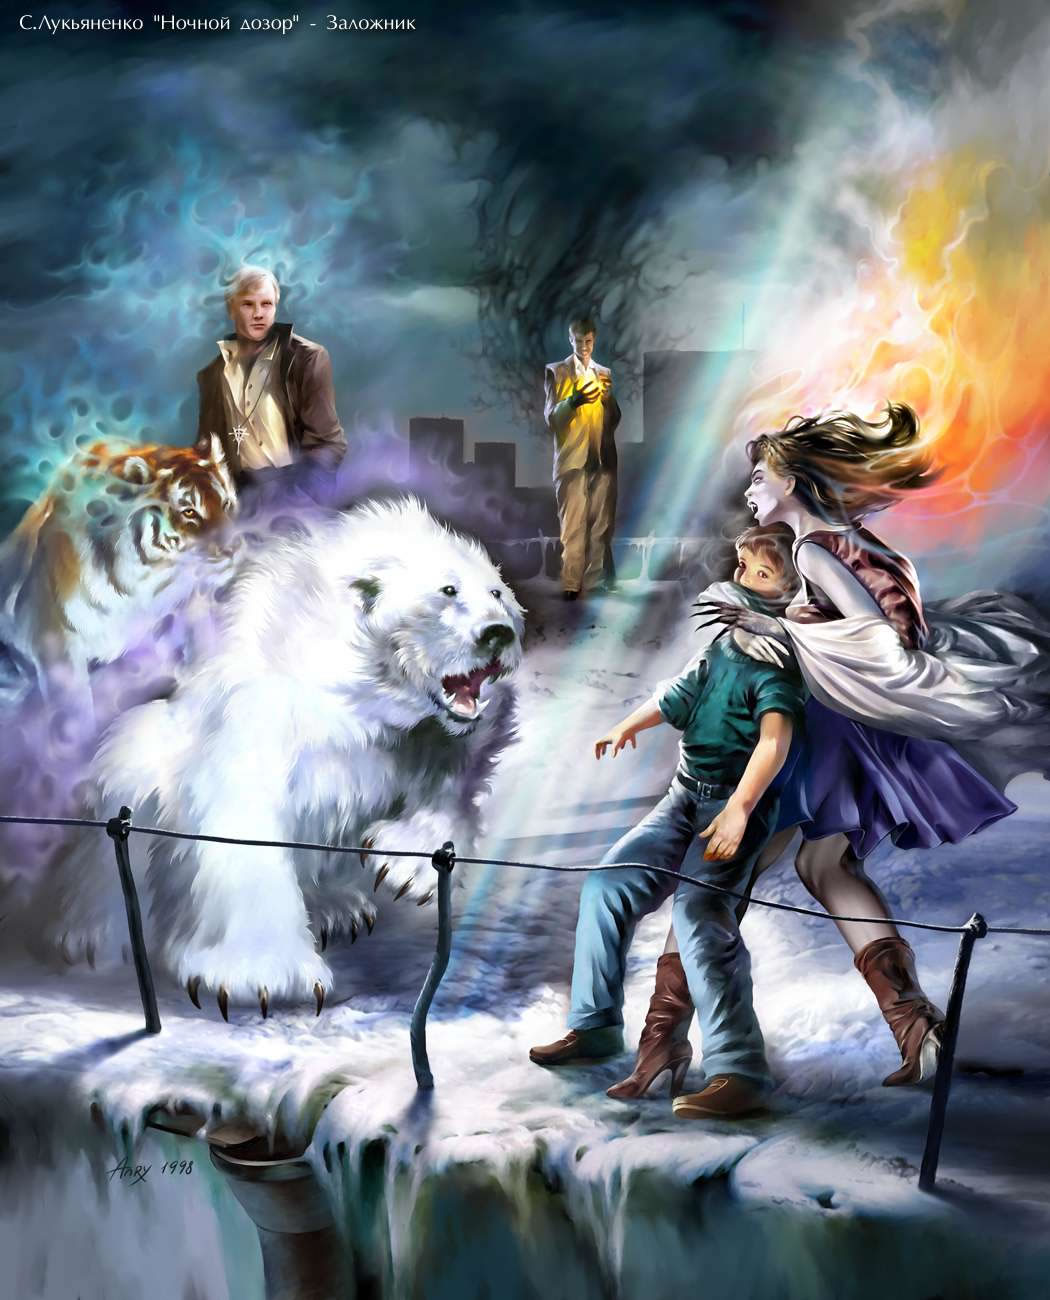 Фото Вампирша захватила мальчика на крыше, перед ней стоят маги Медведь и Тигр и другие маги, иллюстрация на книгу Ночной дозор Сергея Лукьяненко, художник Anry Nemo